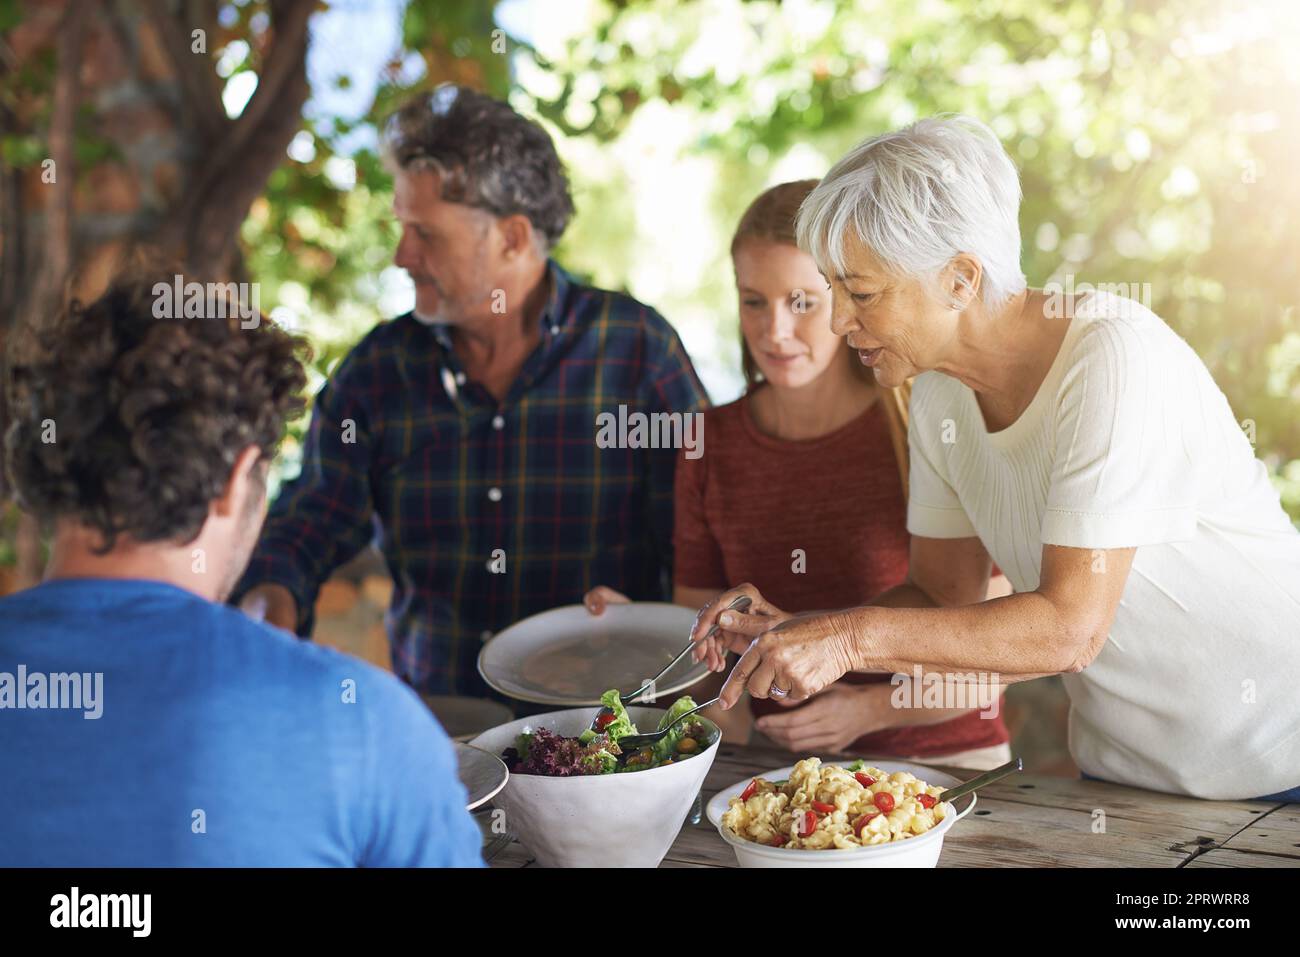 Lassen Sie mich für Sie aufbereiten ... eine Familie, die sich darauf vorbereitet, gemeinsam im Freien zu essen. Stockfoto